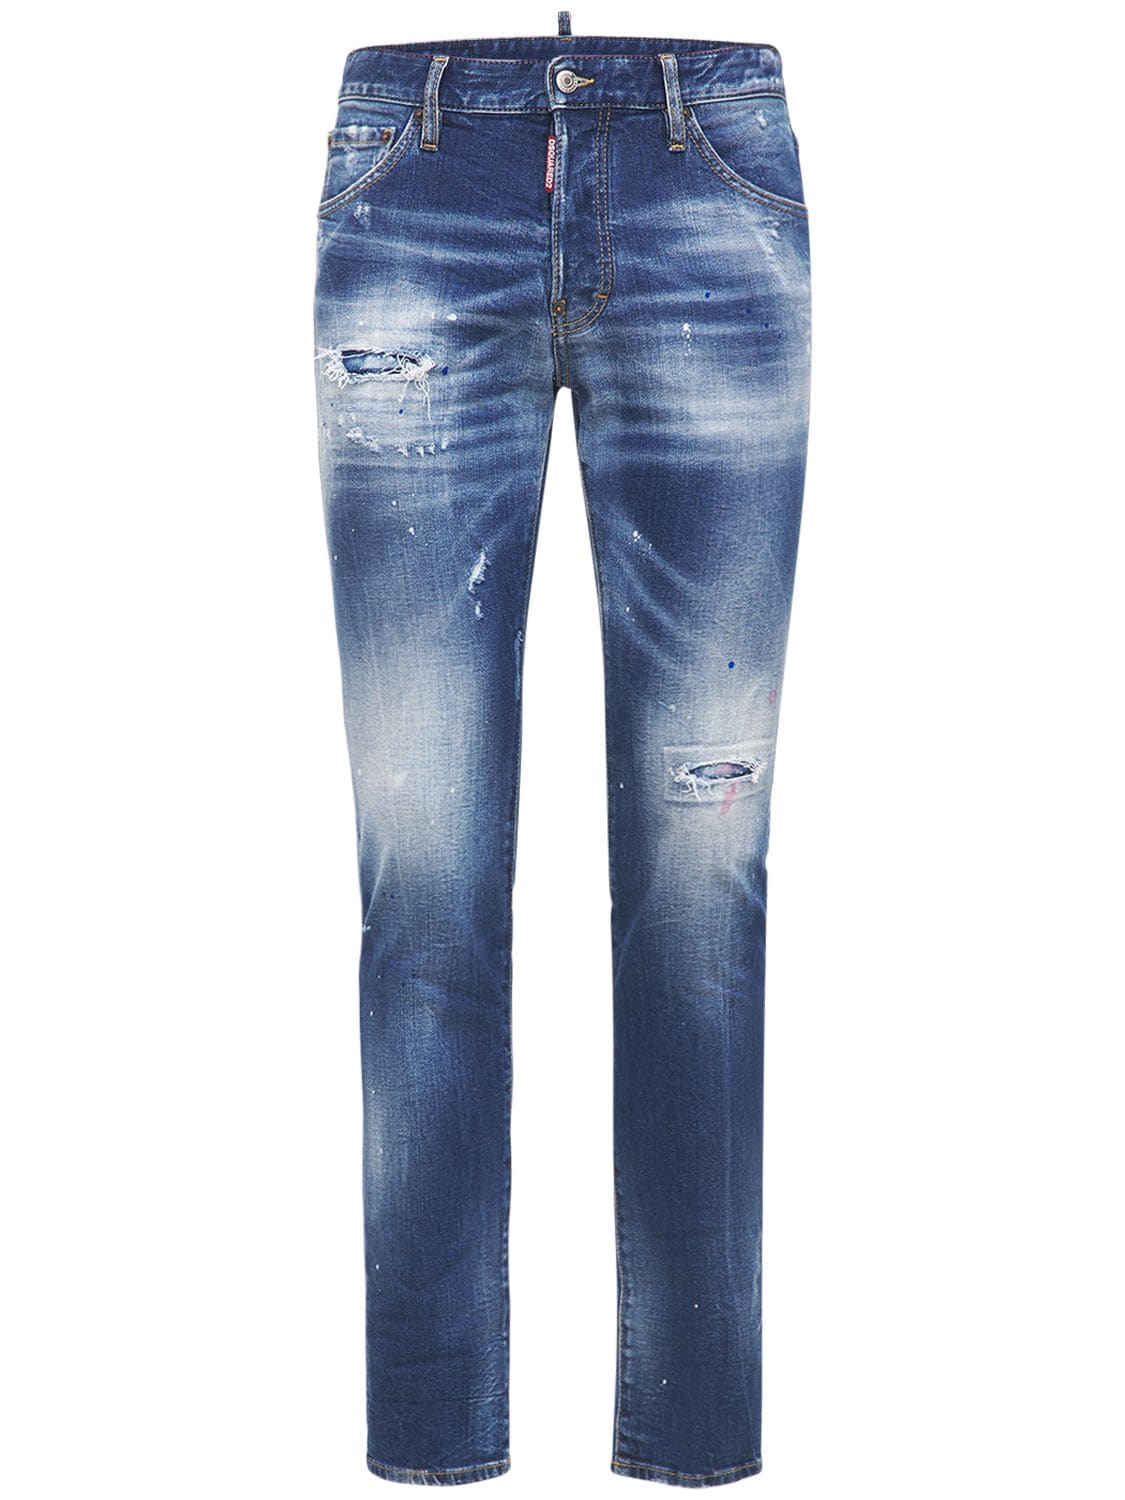 16.5cm Cool Guy Cotton Denim Jeans